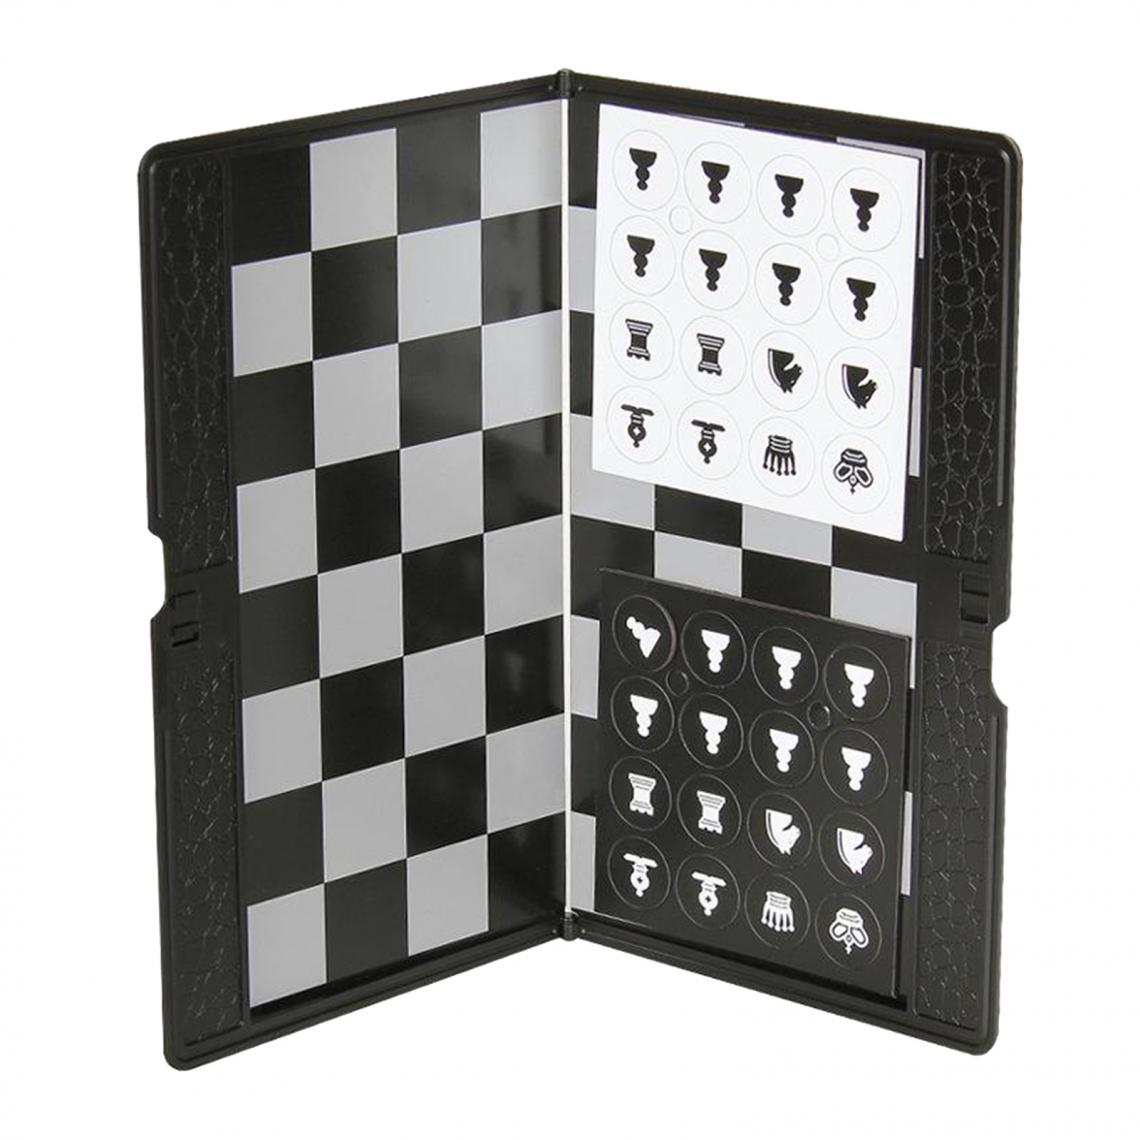 marque generique - Mini jeu d'échecs magnétique voyage taille 7x7 portable - Jeux de stratégie